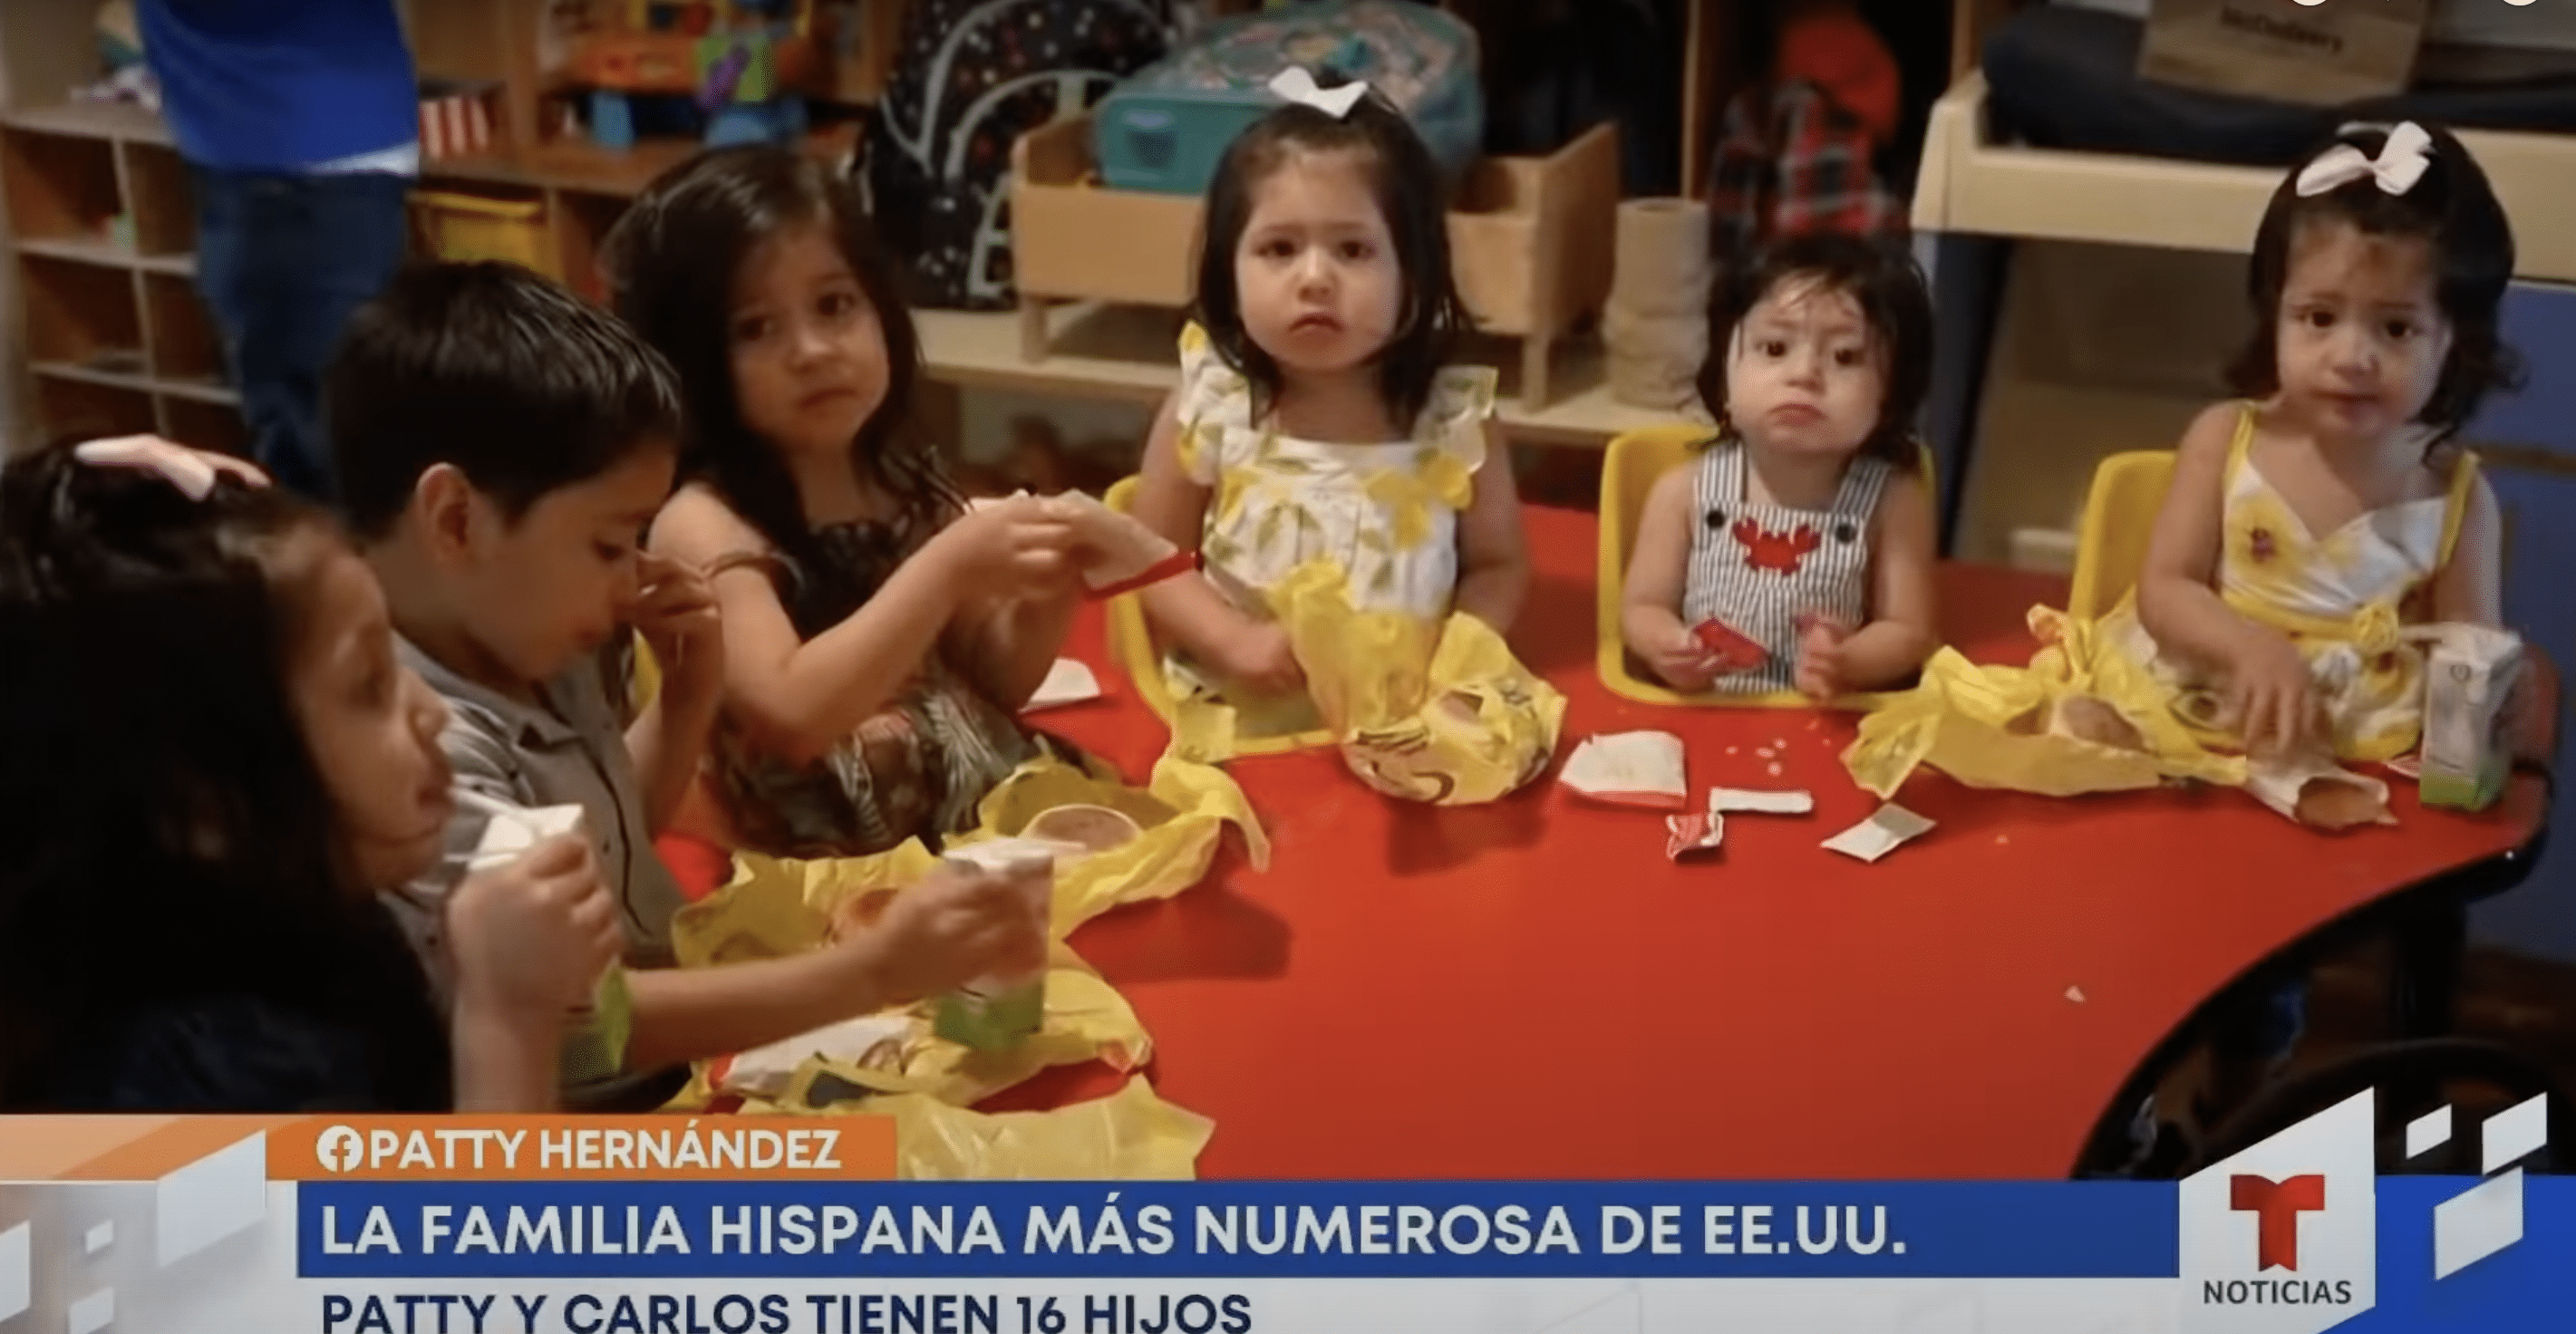 Ein paar der Hernandez-Kinder sind beim Essen zu sehen. | Quelle: YouTube.com/hoy Día